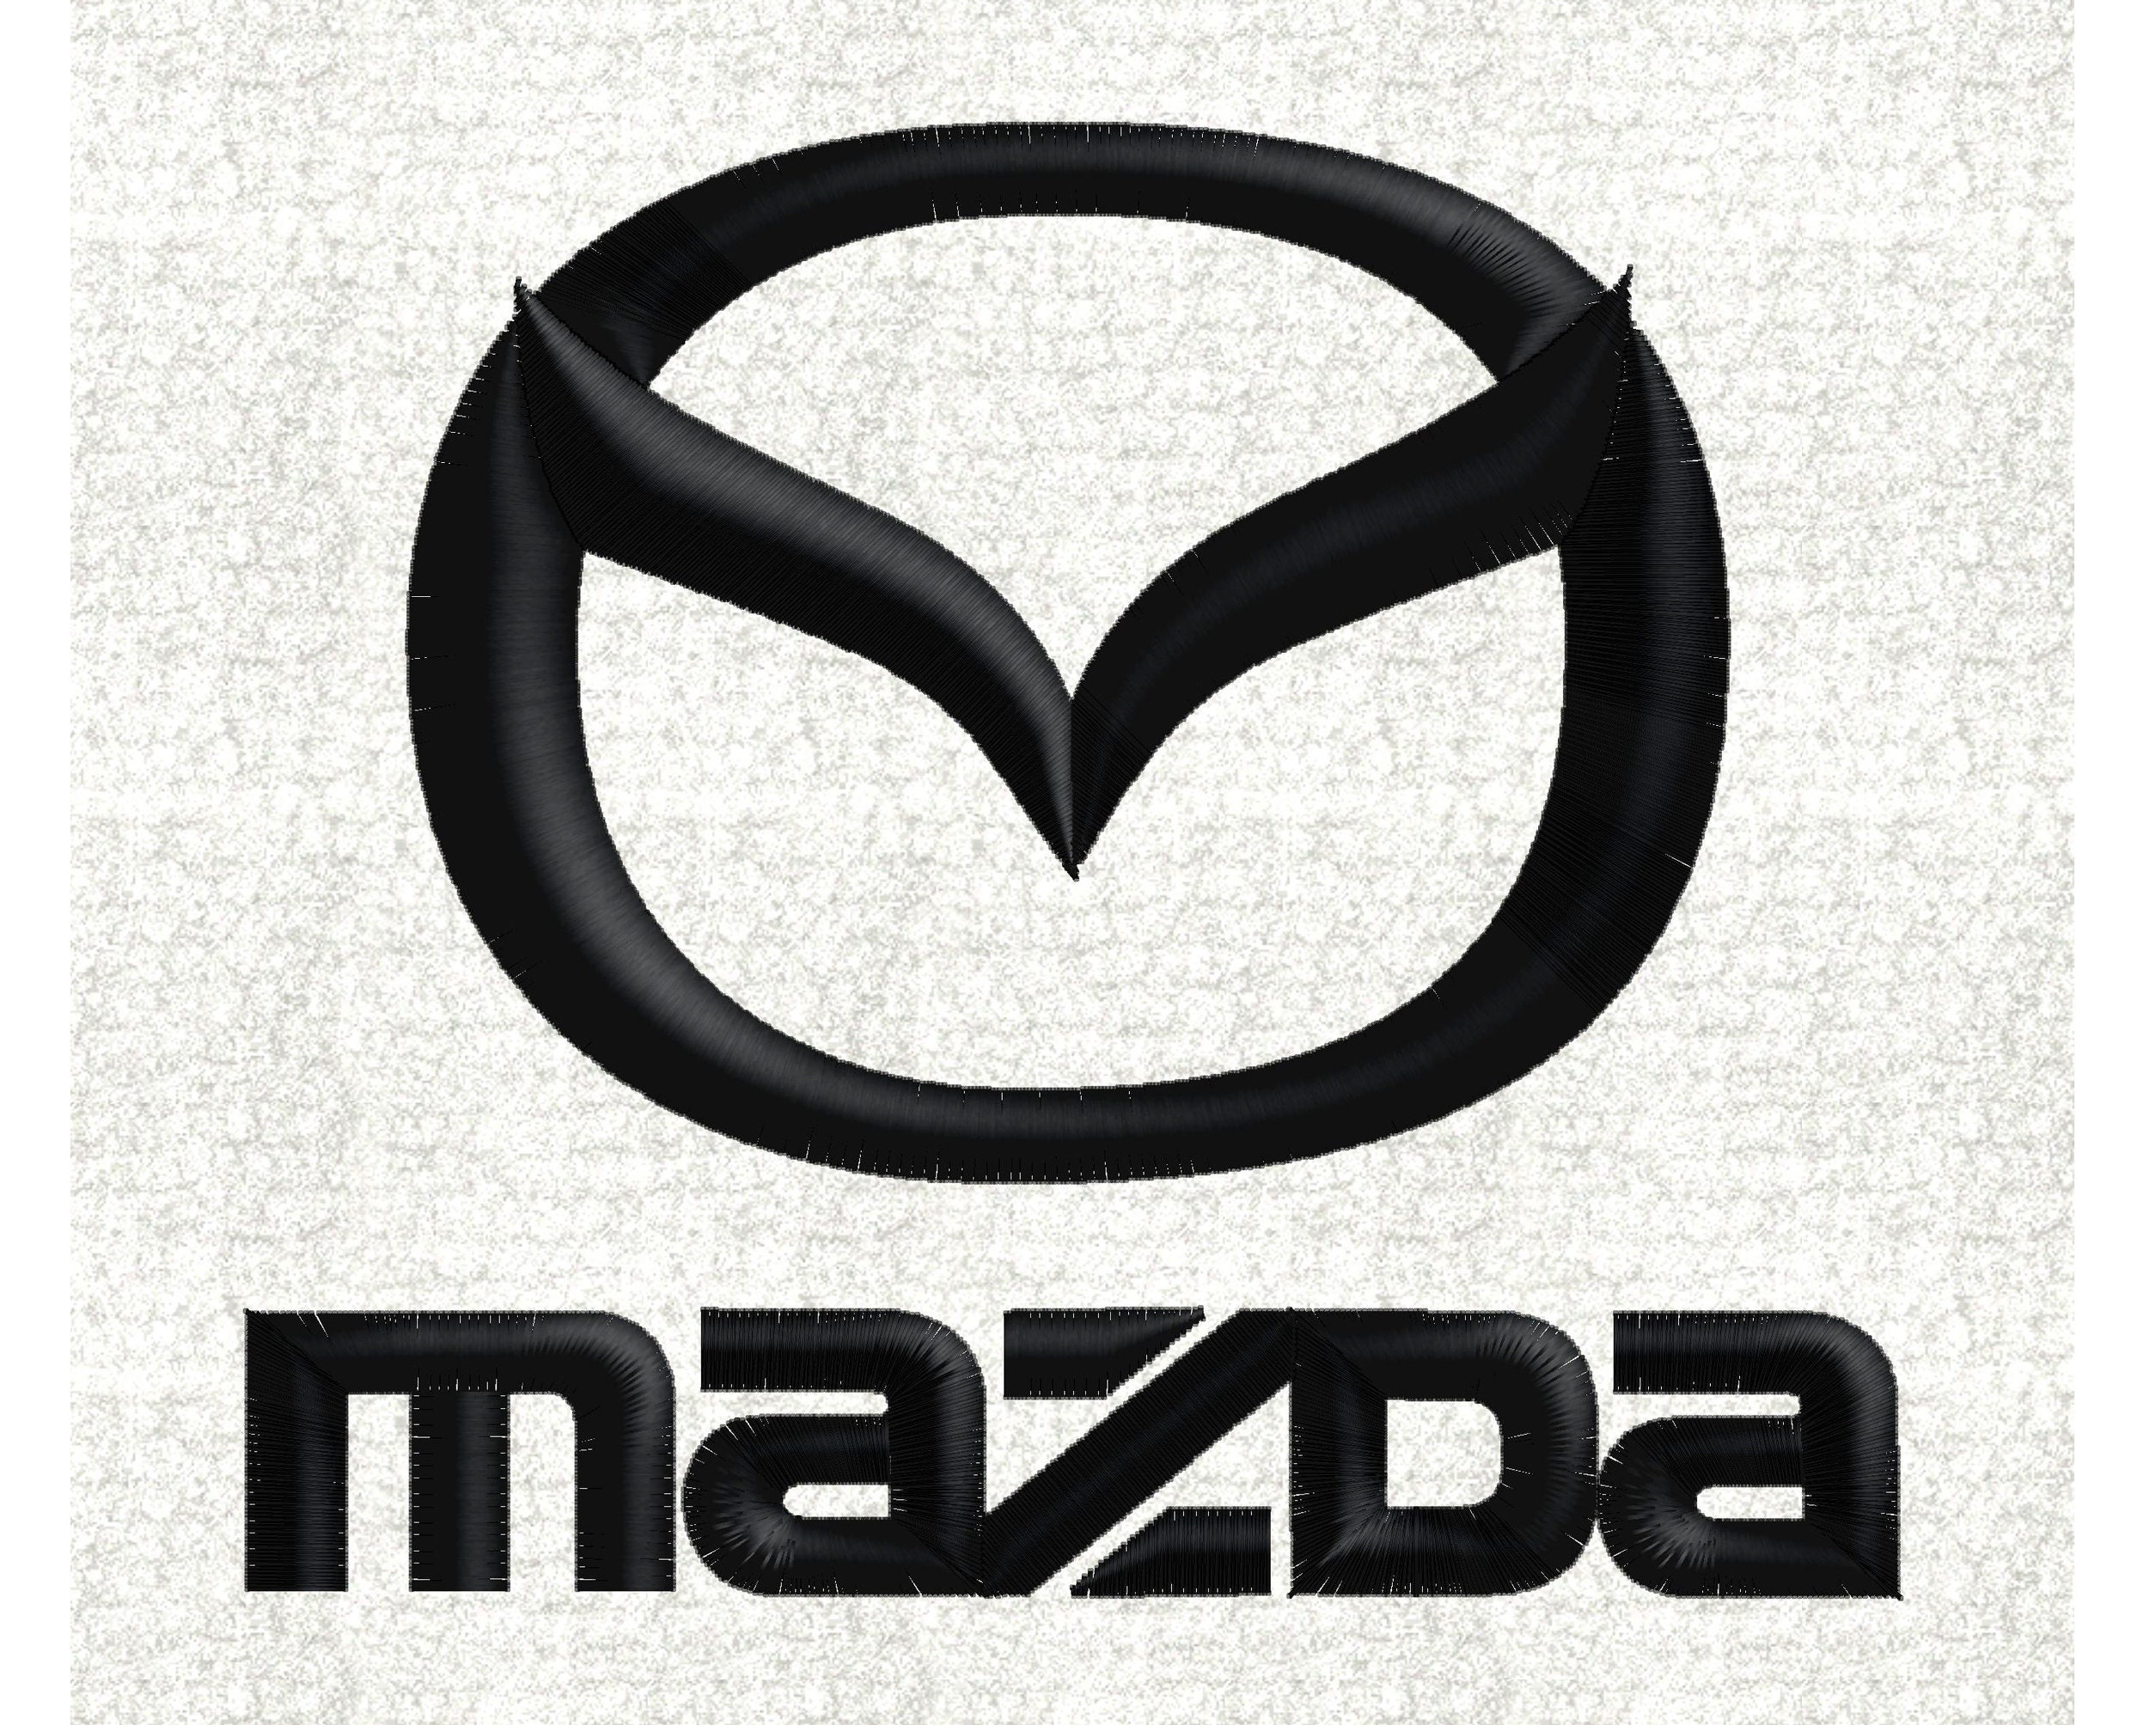 Emblem Adesivo per Mazda 3 Axela 6 Cx5 2 Demio Cx3 Cx30 Mx5 Cx7 8 Cx8,  Decalcomanie Auto, Adesivi per Auto Logo Badge Decal Emblema Adesivo,  Accessori